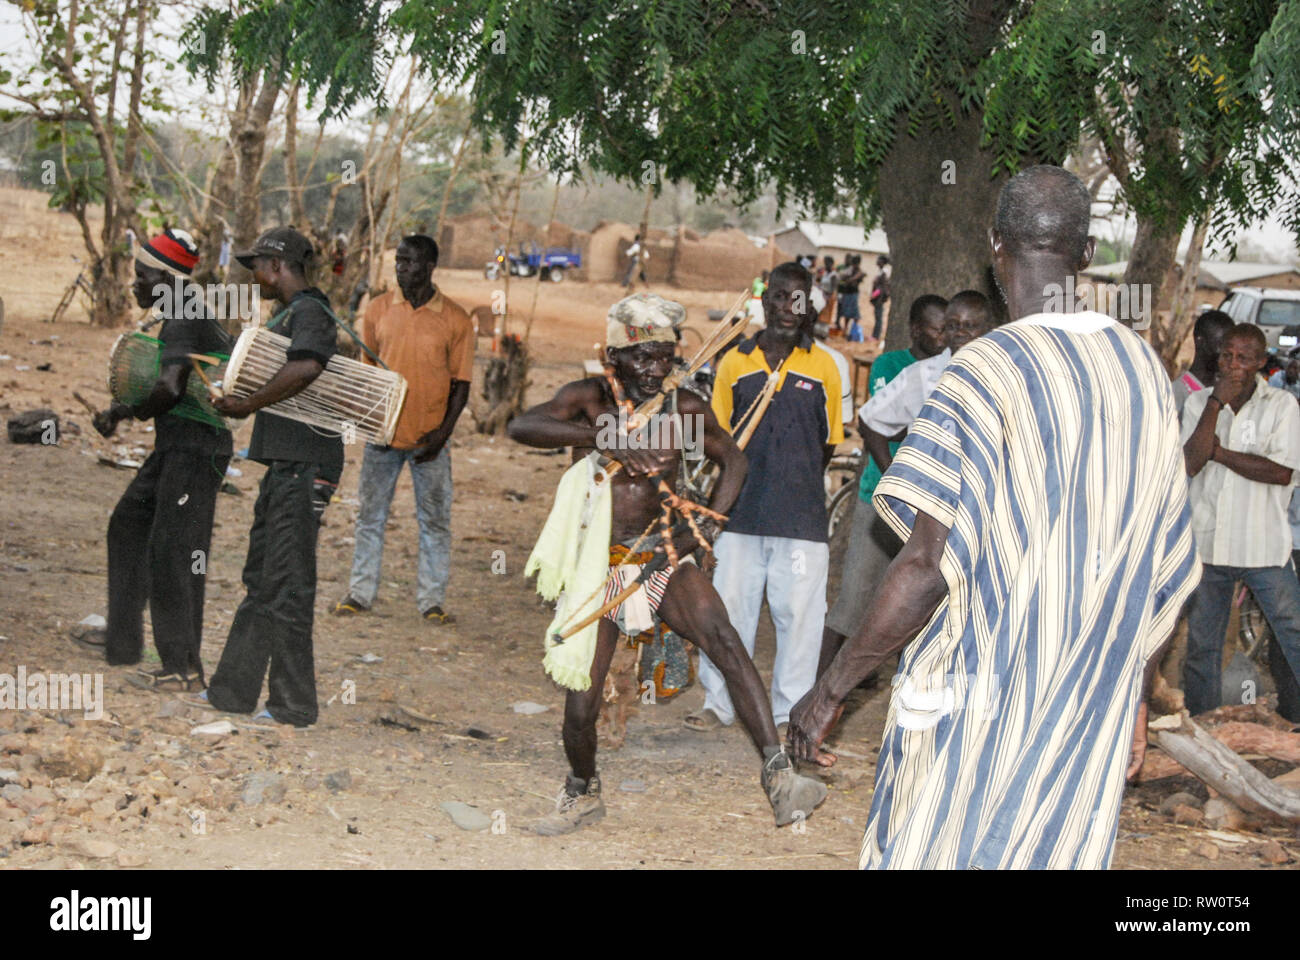 Les hommes portant des vêtements traditionnels ghanéens mélangé avec de modernes effectuant une danse rituelle à l'honneur du défunt à un salon funéraire Banque D'Images